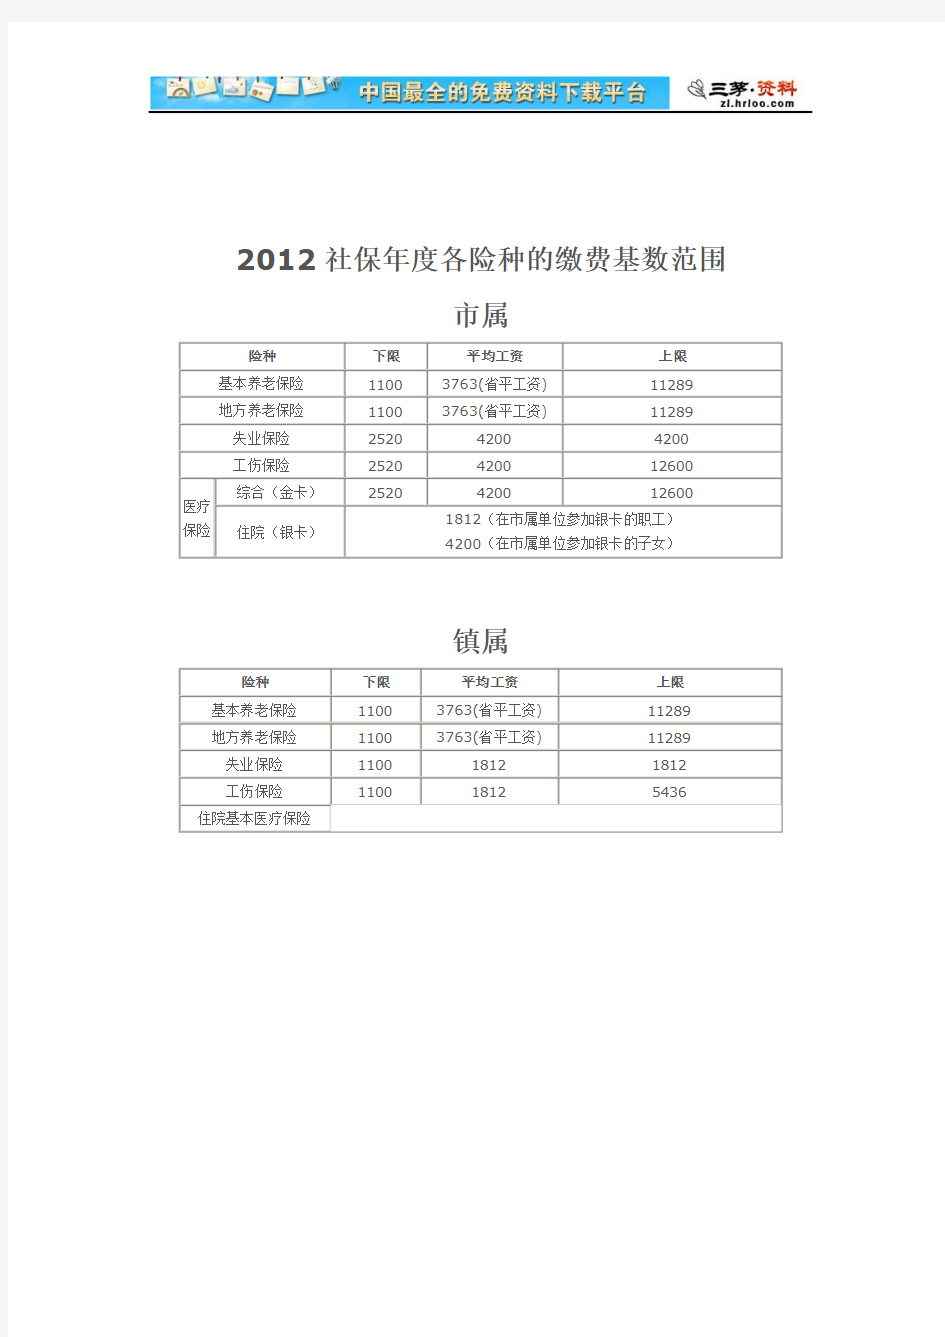 【东莞市】2012年各险种的缴费比例和基数